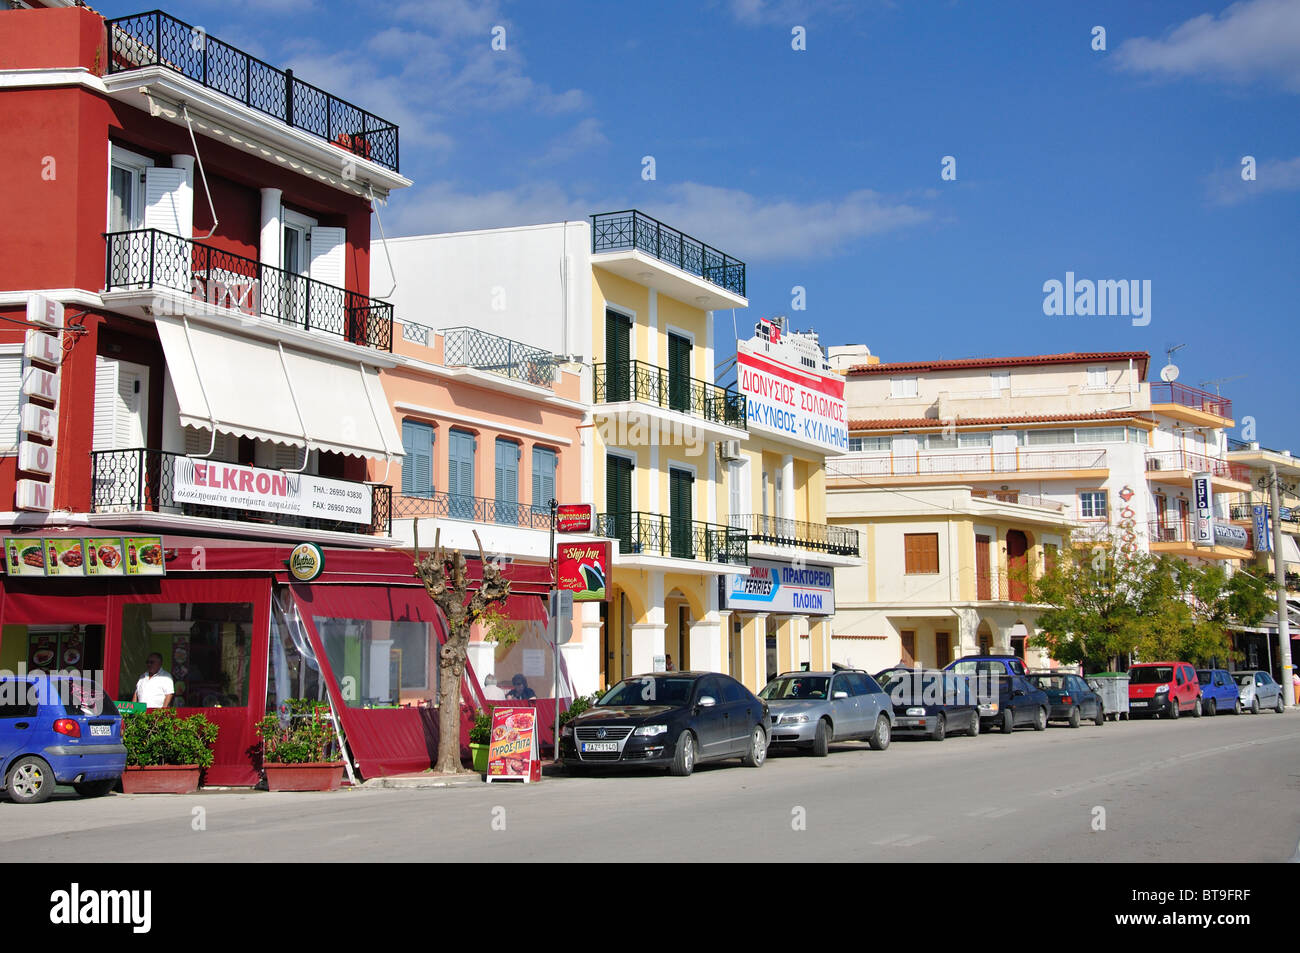 Les bâtiments du front de mer, Strada Marina, la ville de Zakynthos, Zante, îles Ioniennes, Grèce Banque D'Images